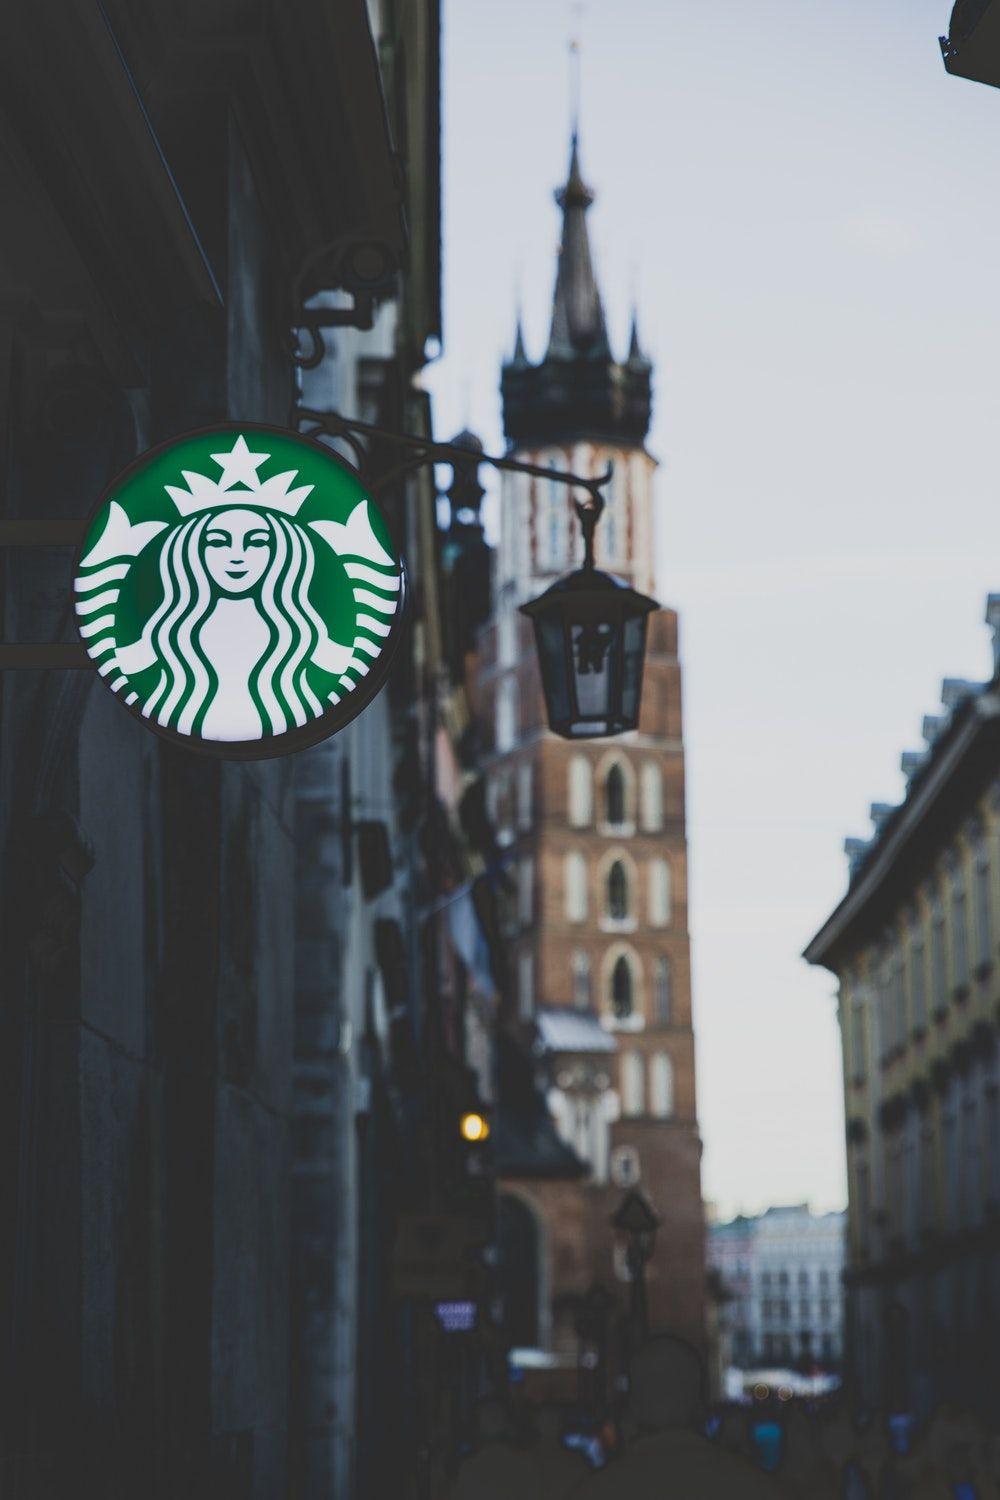 Medium Printable Starbucks Logo - Starbucks Picture. Download Free Image